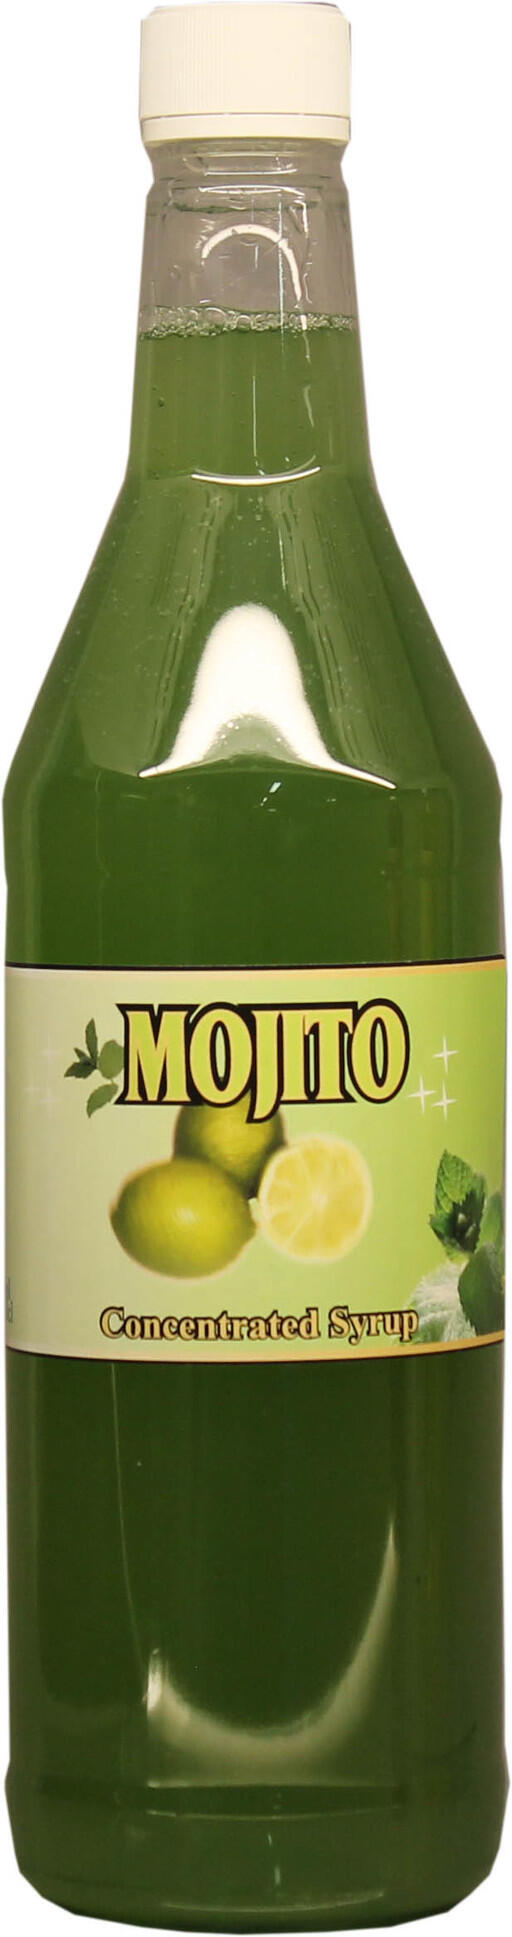 Mojito syrup (sirap) fungerar perfekt för att ge dina drinkar en god mojitosmak av lime och mynta.